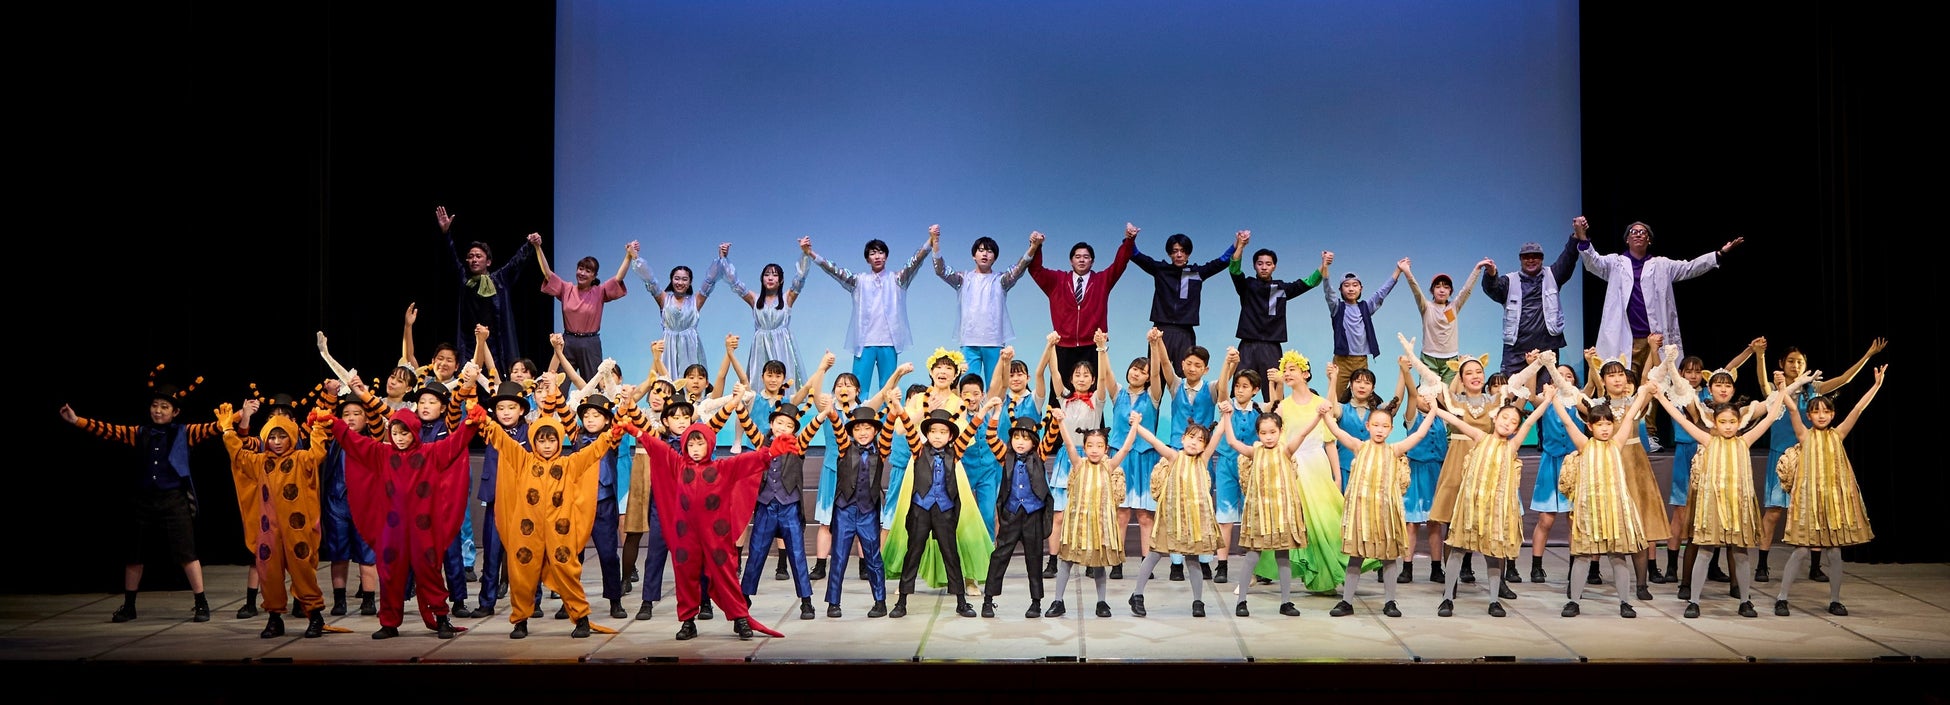 ​69名の岡山の子どもたちが熱演！​​日本カバヤ・オハヨーホールディングス主催​　第5回 岡山子ども未来ミュージカル「ハロルド！」を開催いたしました​​